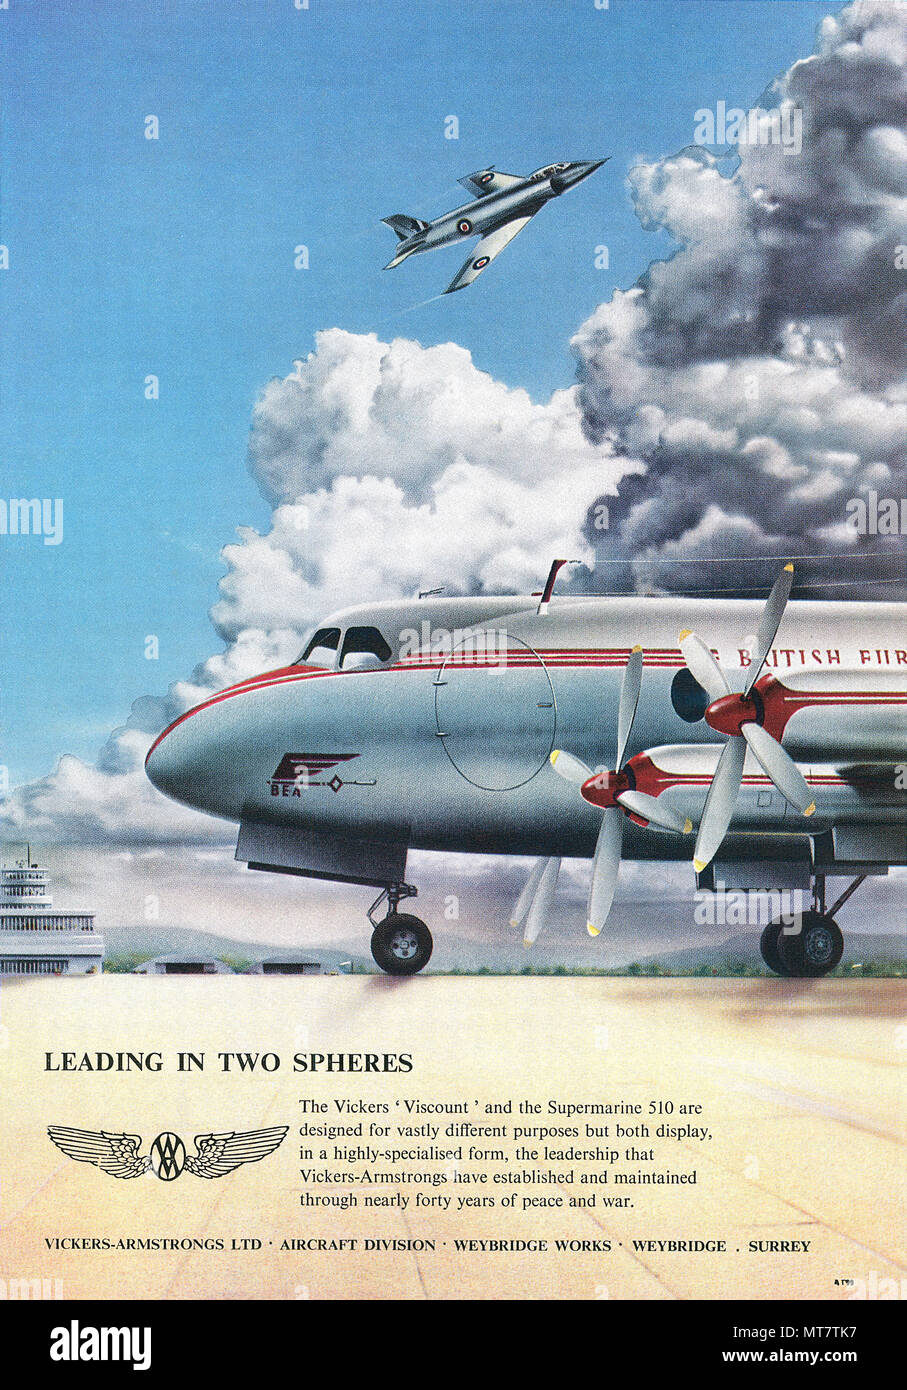 1950 britischen Werbung für Vickers-Armstrongs, zeigt die Vickers Viscount Airliner und die Supermarine 510 Jet Fighter. Stockfoto